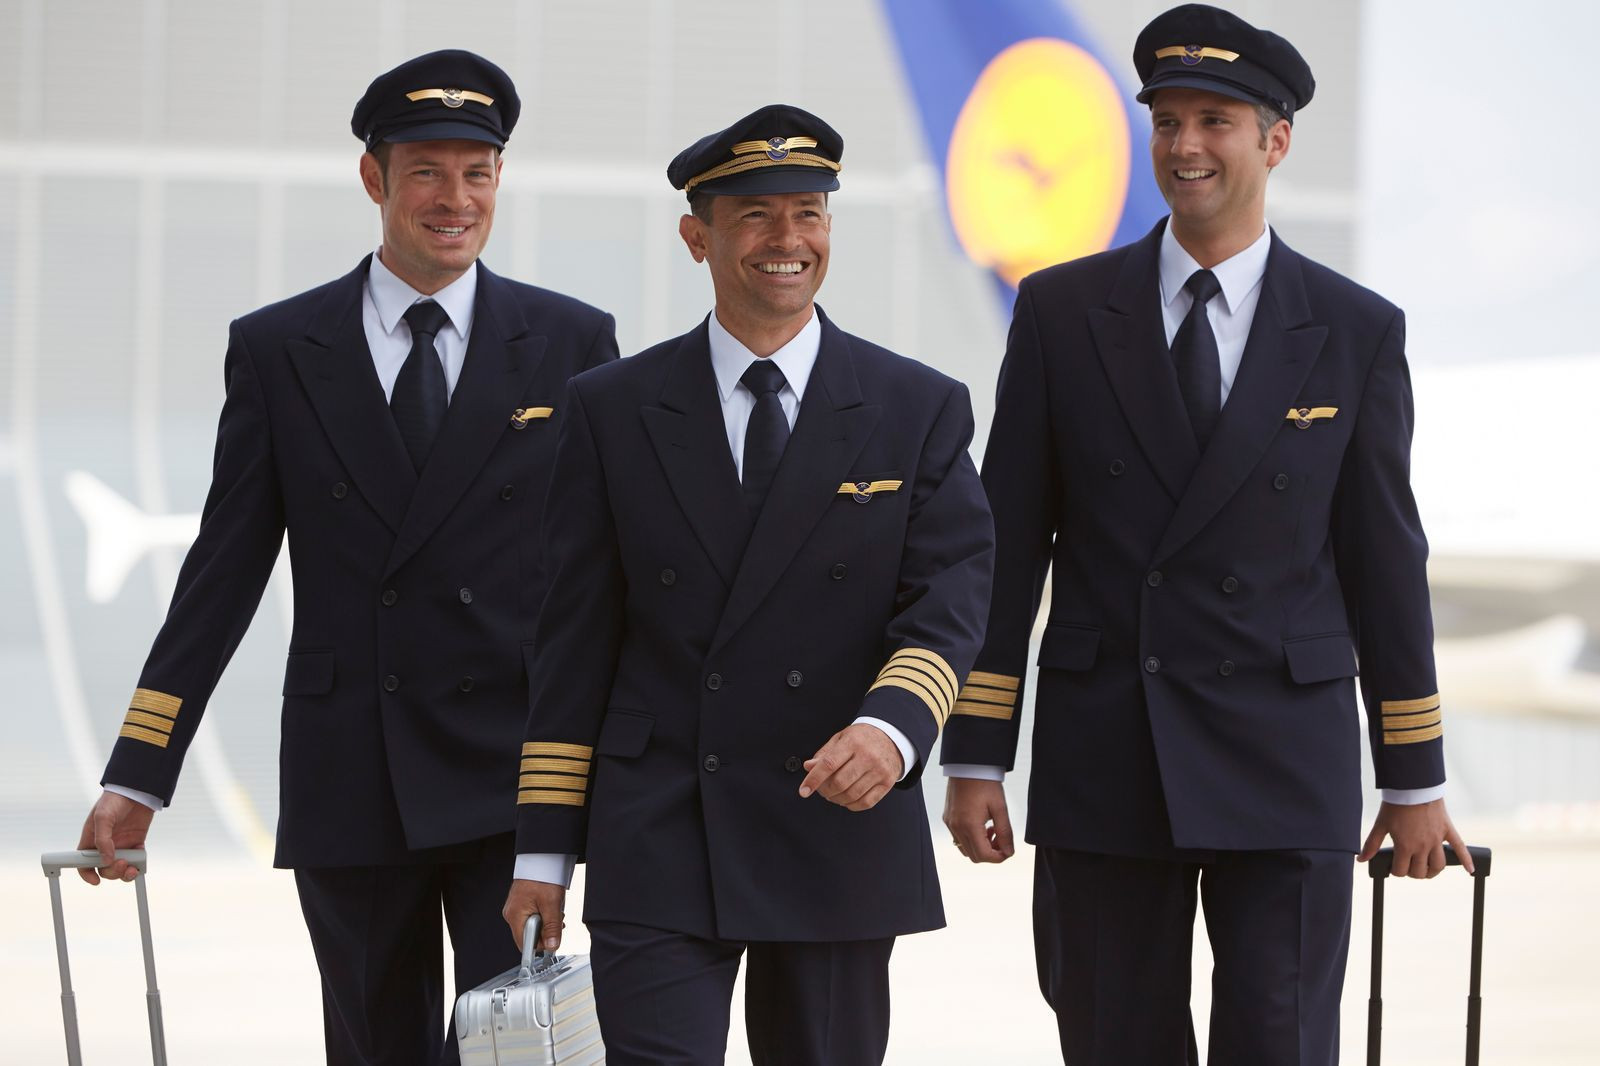 Überraschende Kehrtwende: Piloten steuern Lufthansa-Flugzeug nach